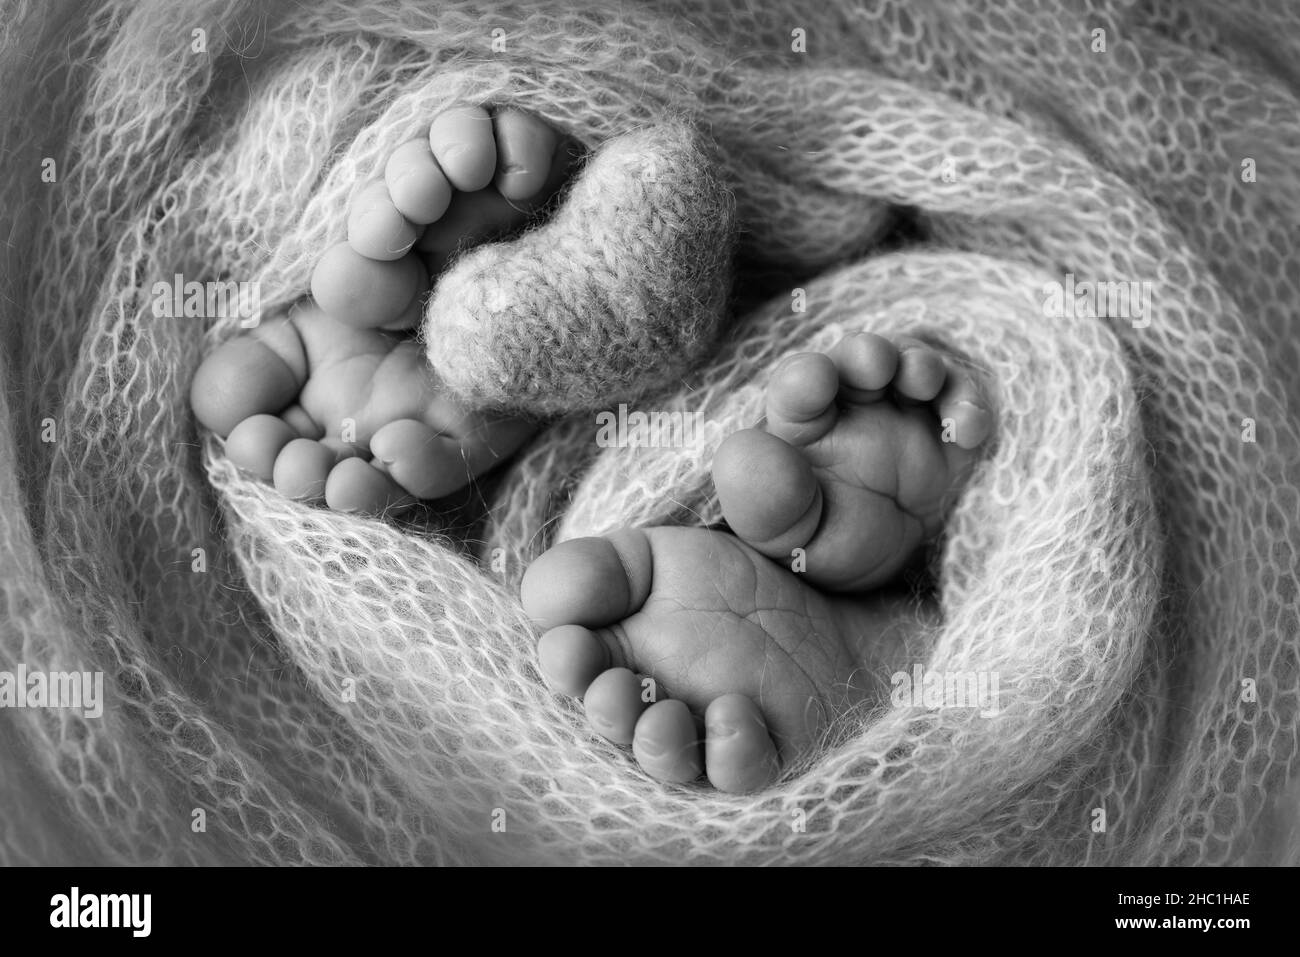 Füße neugeborener Zwillinge zwei Paar Babyfüße in einer Strickdecke, gestricktes Herz Stockfoto